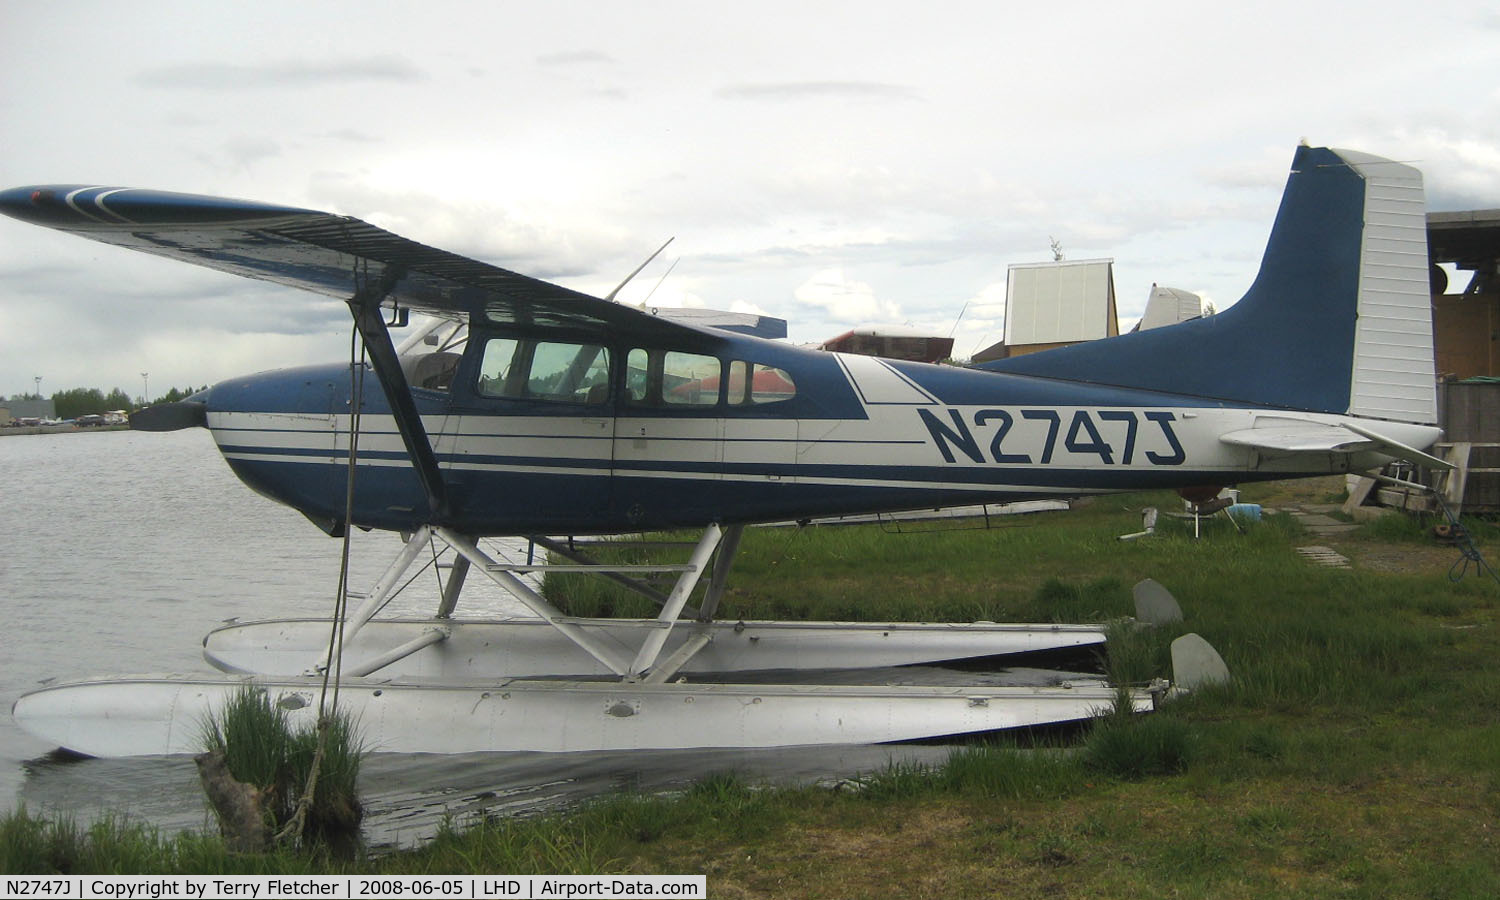 N2747J, 1969 Cessna A185E Skywagon 185 C/N 185-1497, Cessna A185E at Lake Hood